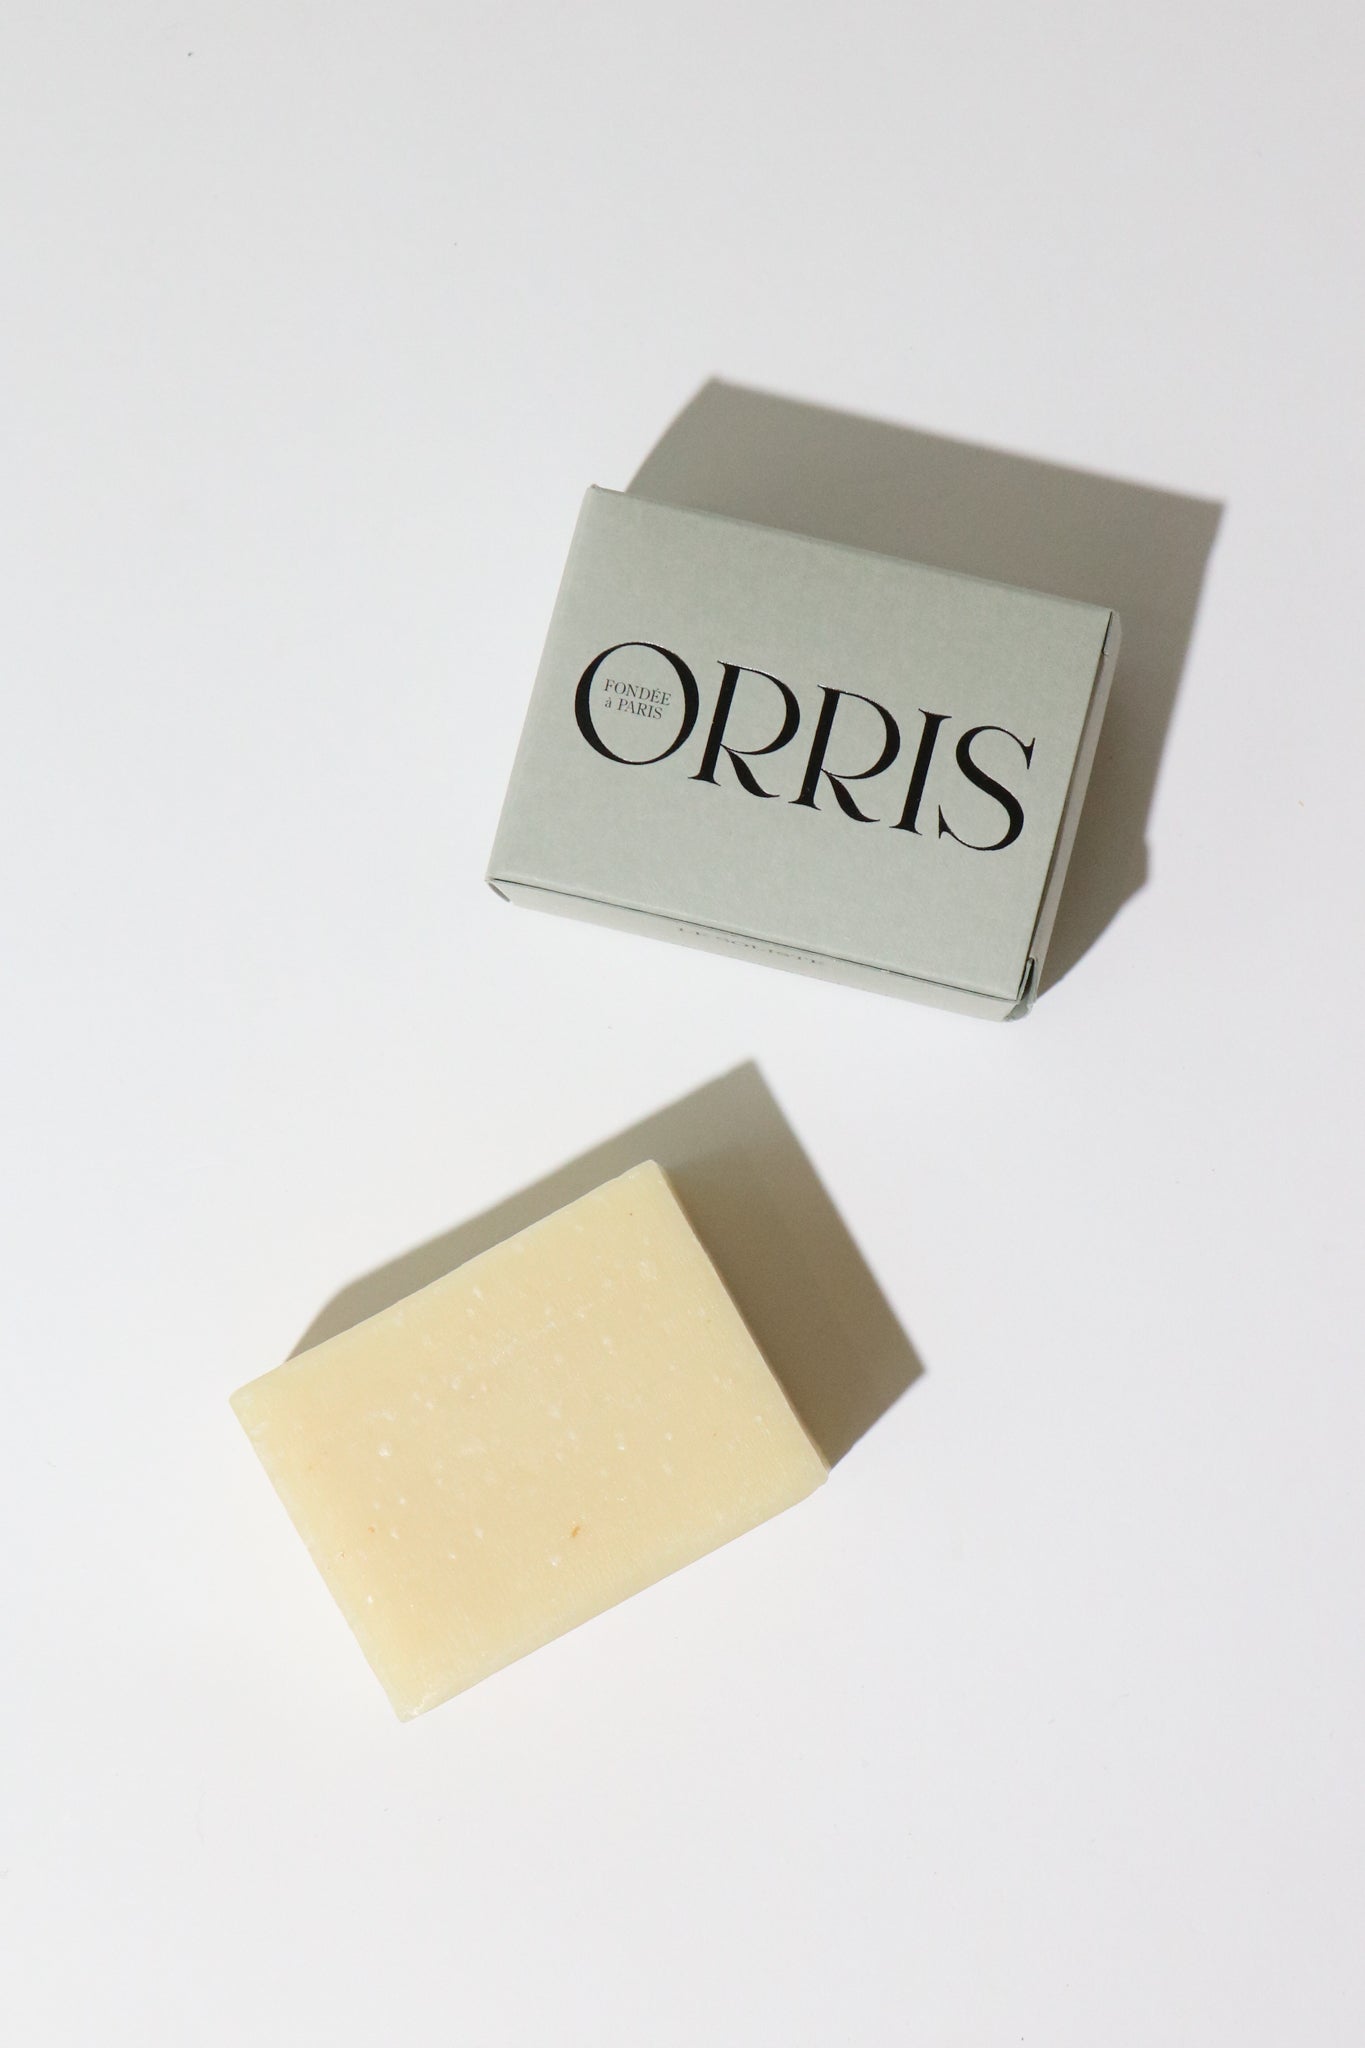 Shop Sommer Orris Paris Le Soliste Artisanal Soap